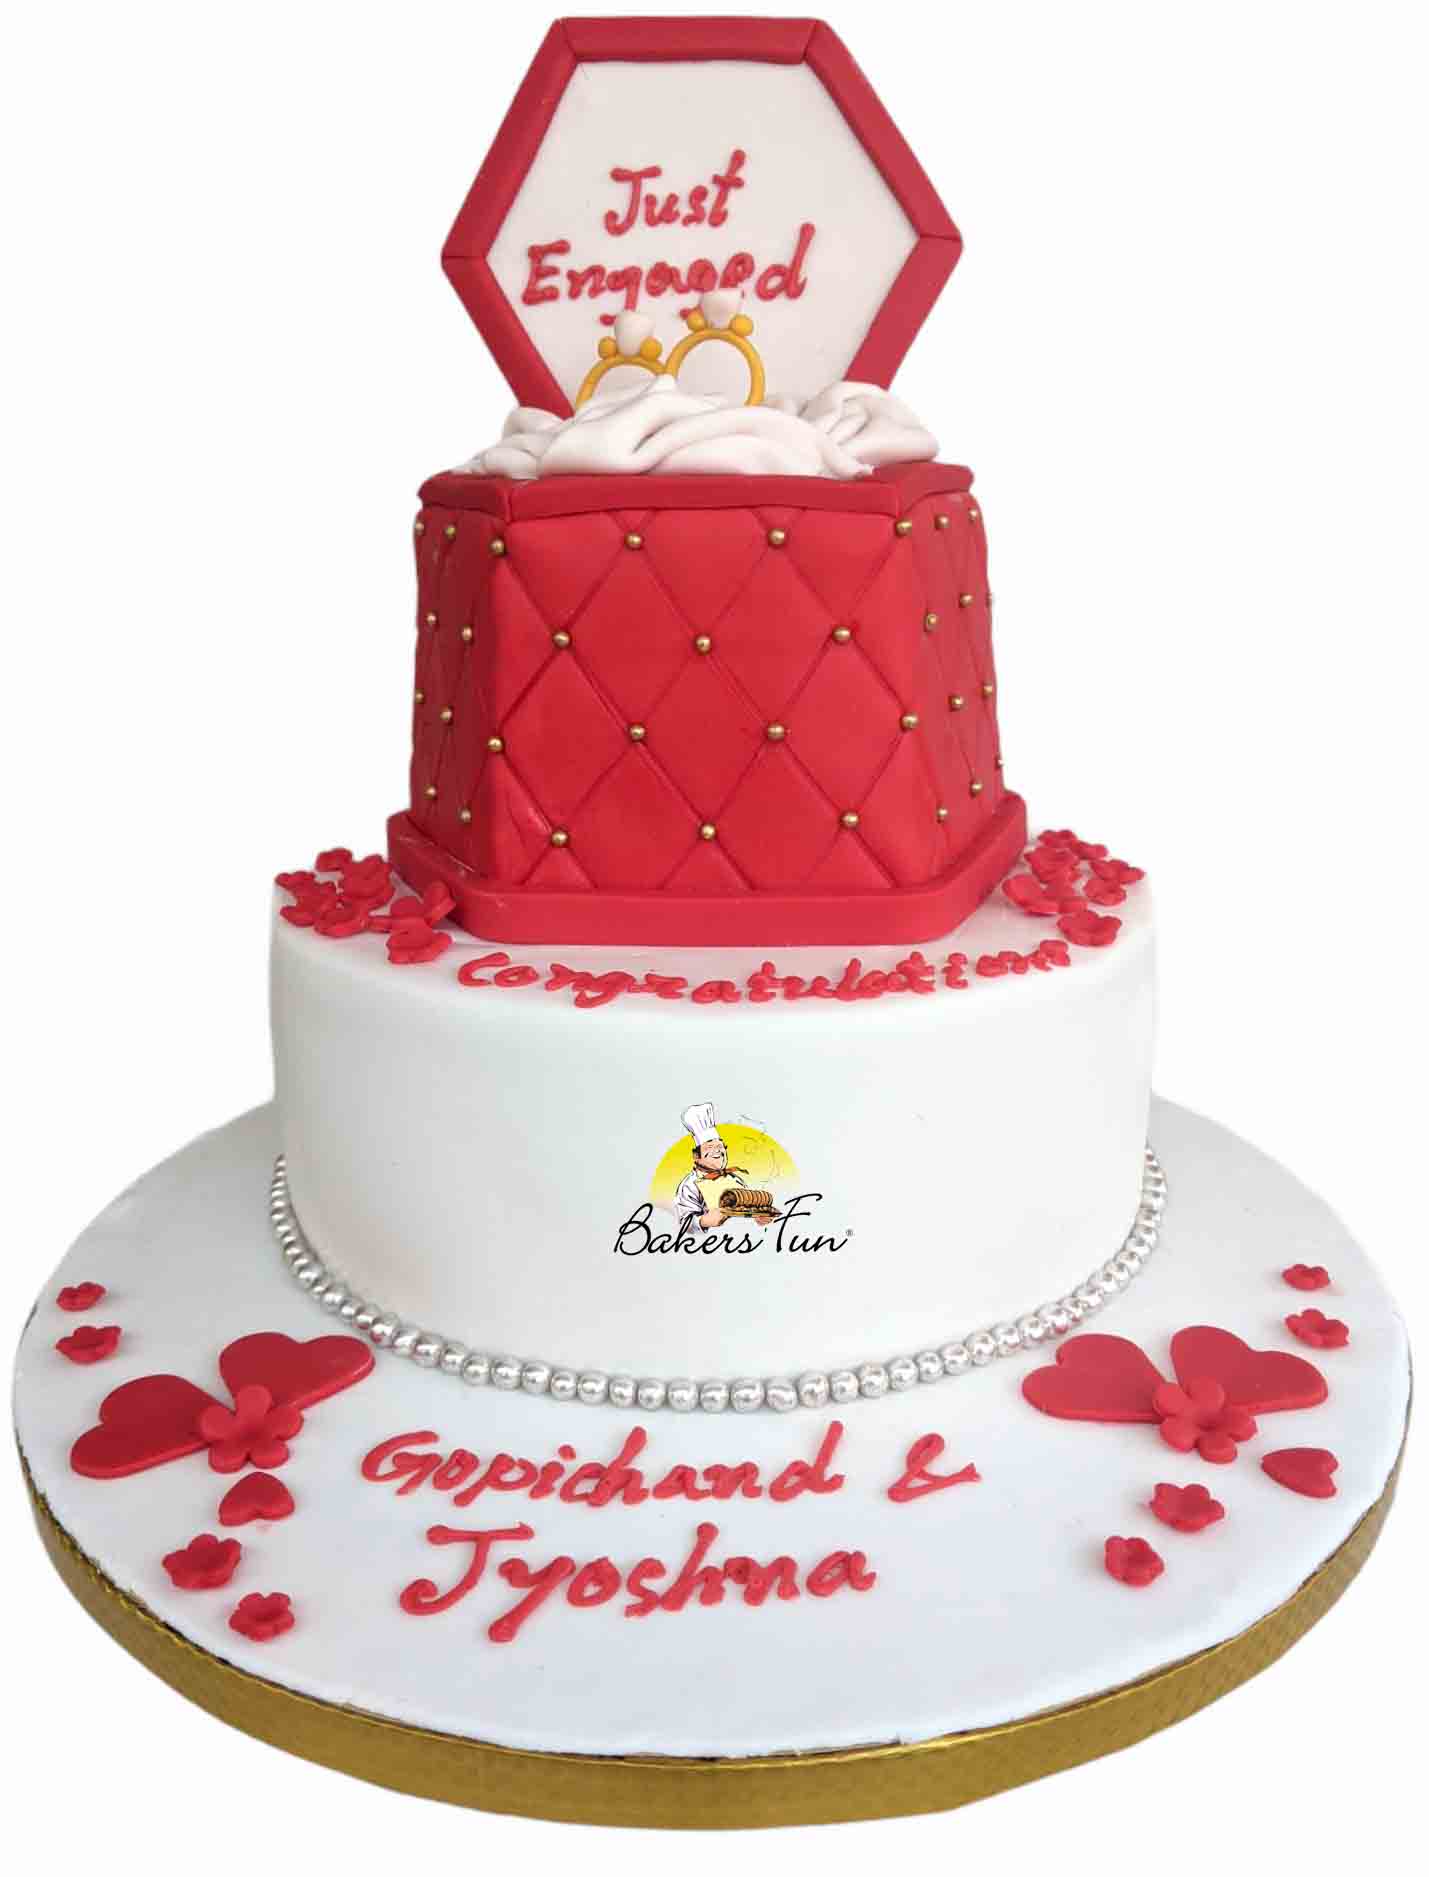 12th anniversary cake